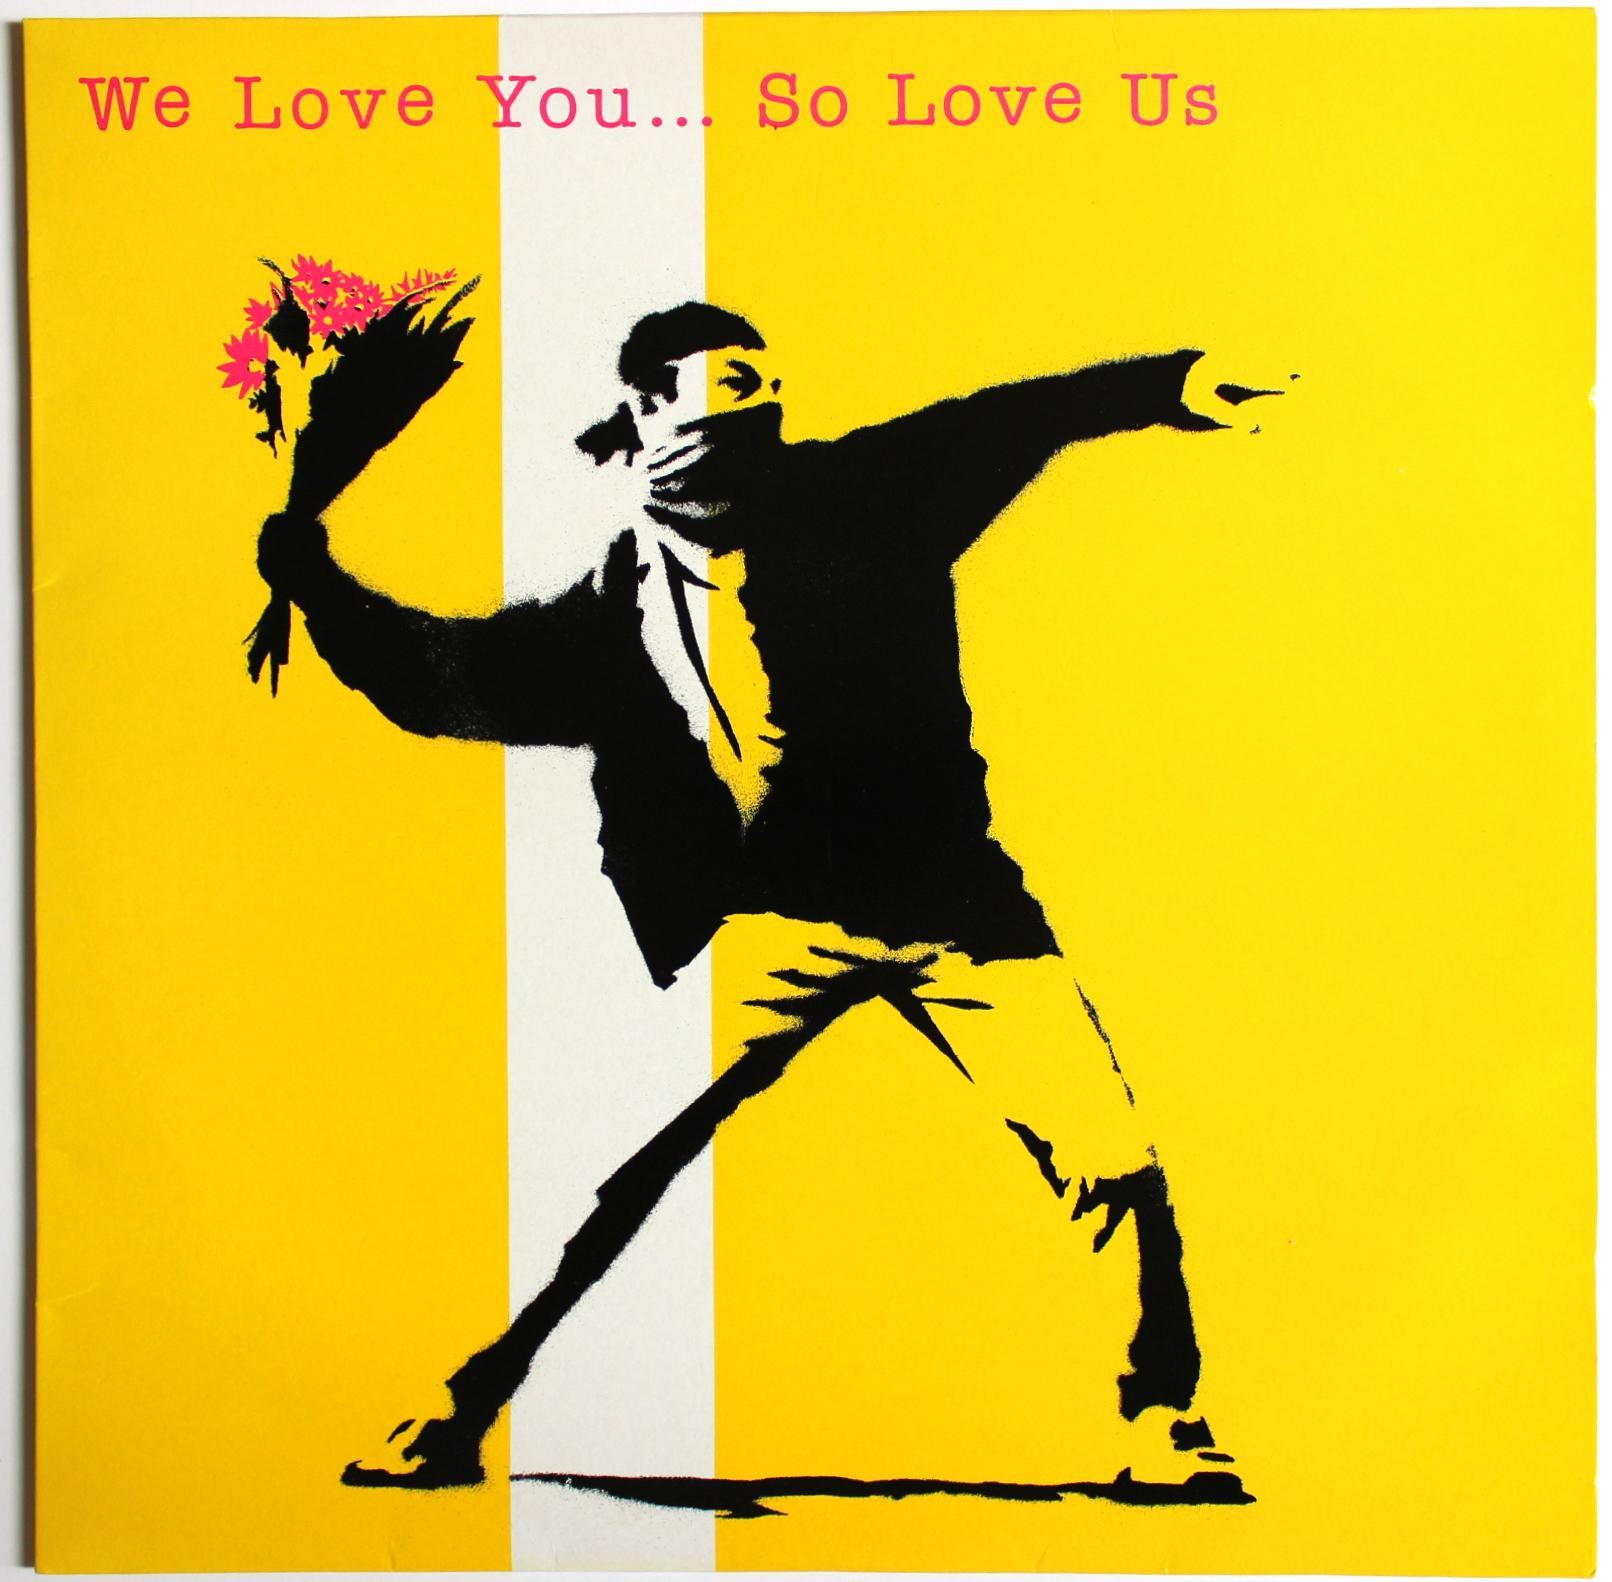 We Love You So Love Us - Art by Banksy